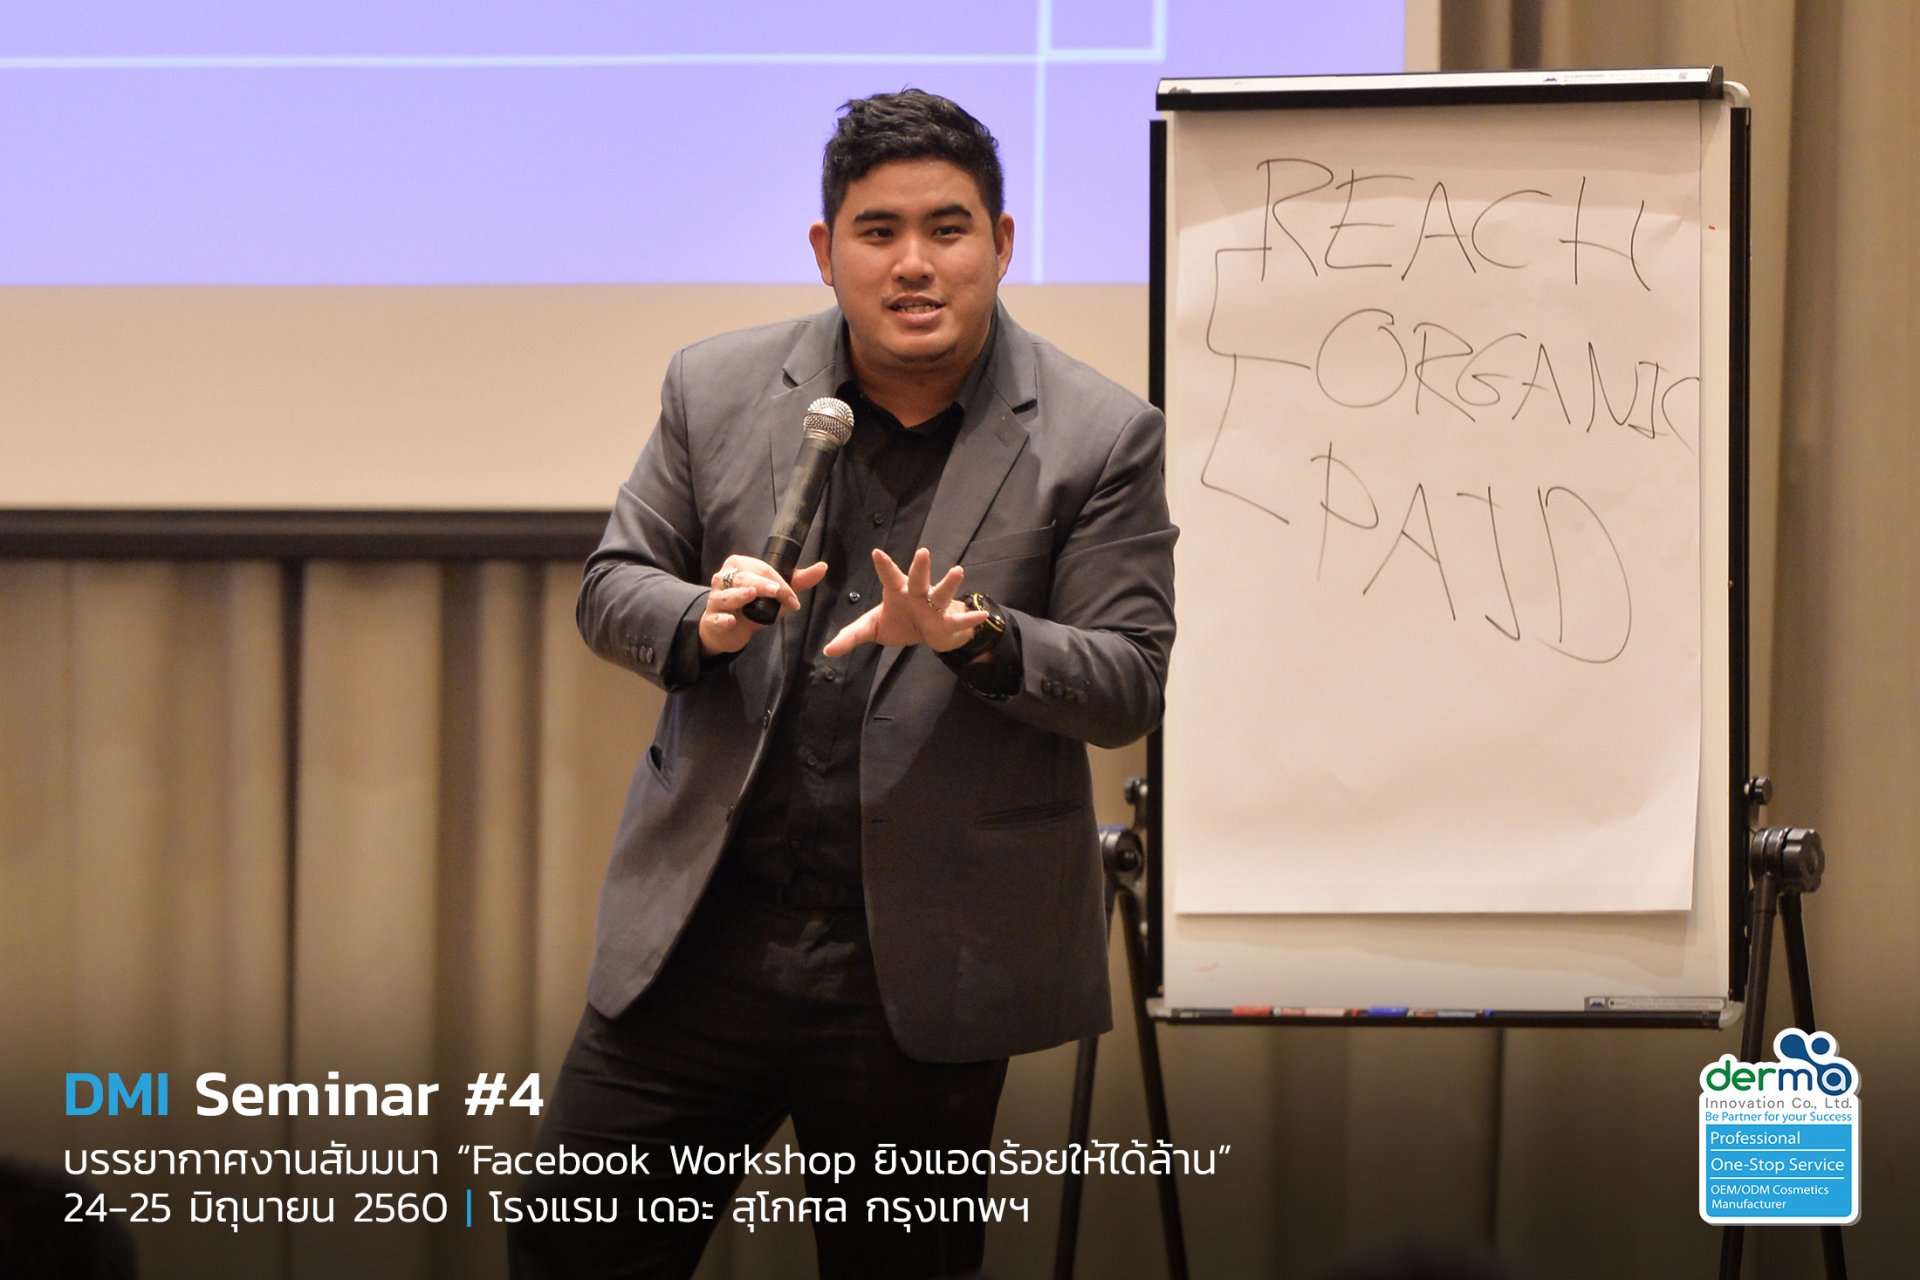 ประมวลภาพสุดประทับใจในงาน DMI Seminar #4 "Facebook Workshop ยิงแอดร้อยให้ได้ล้าน"